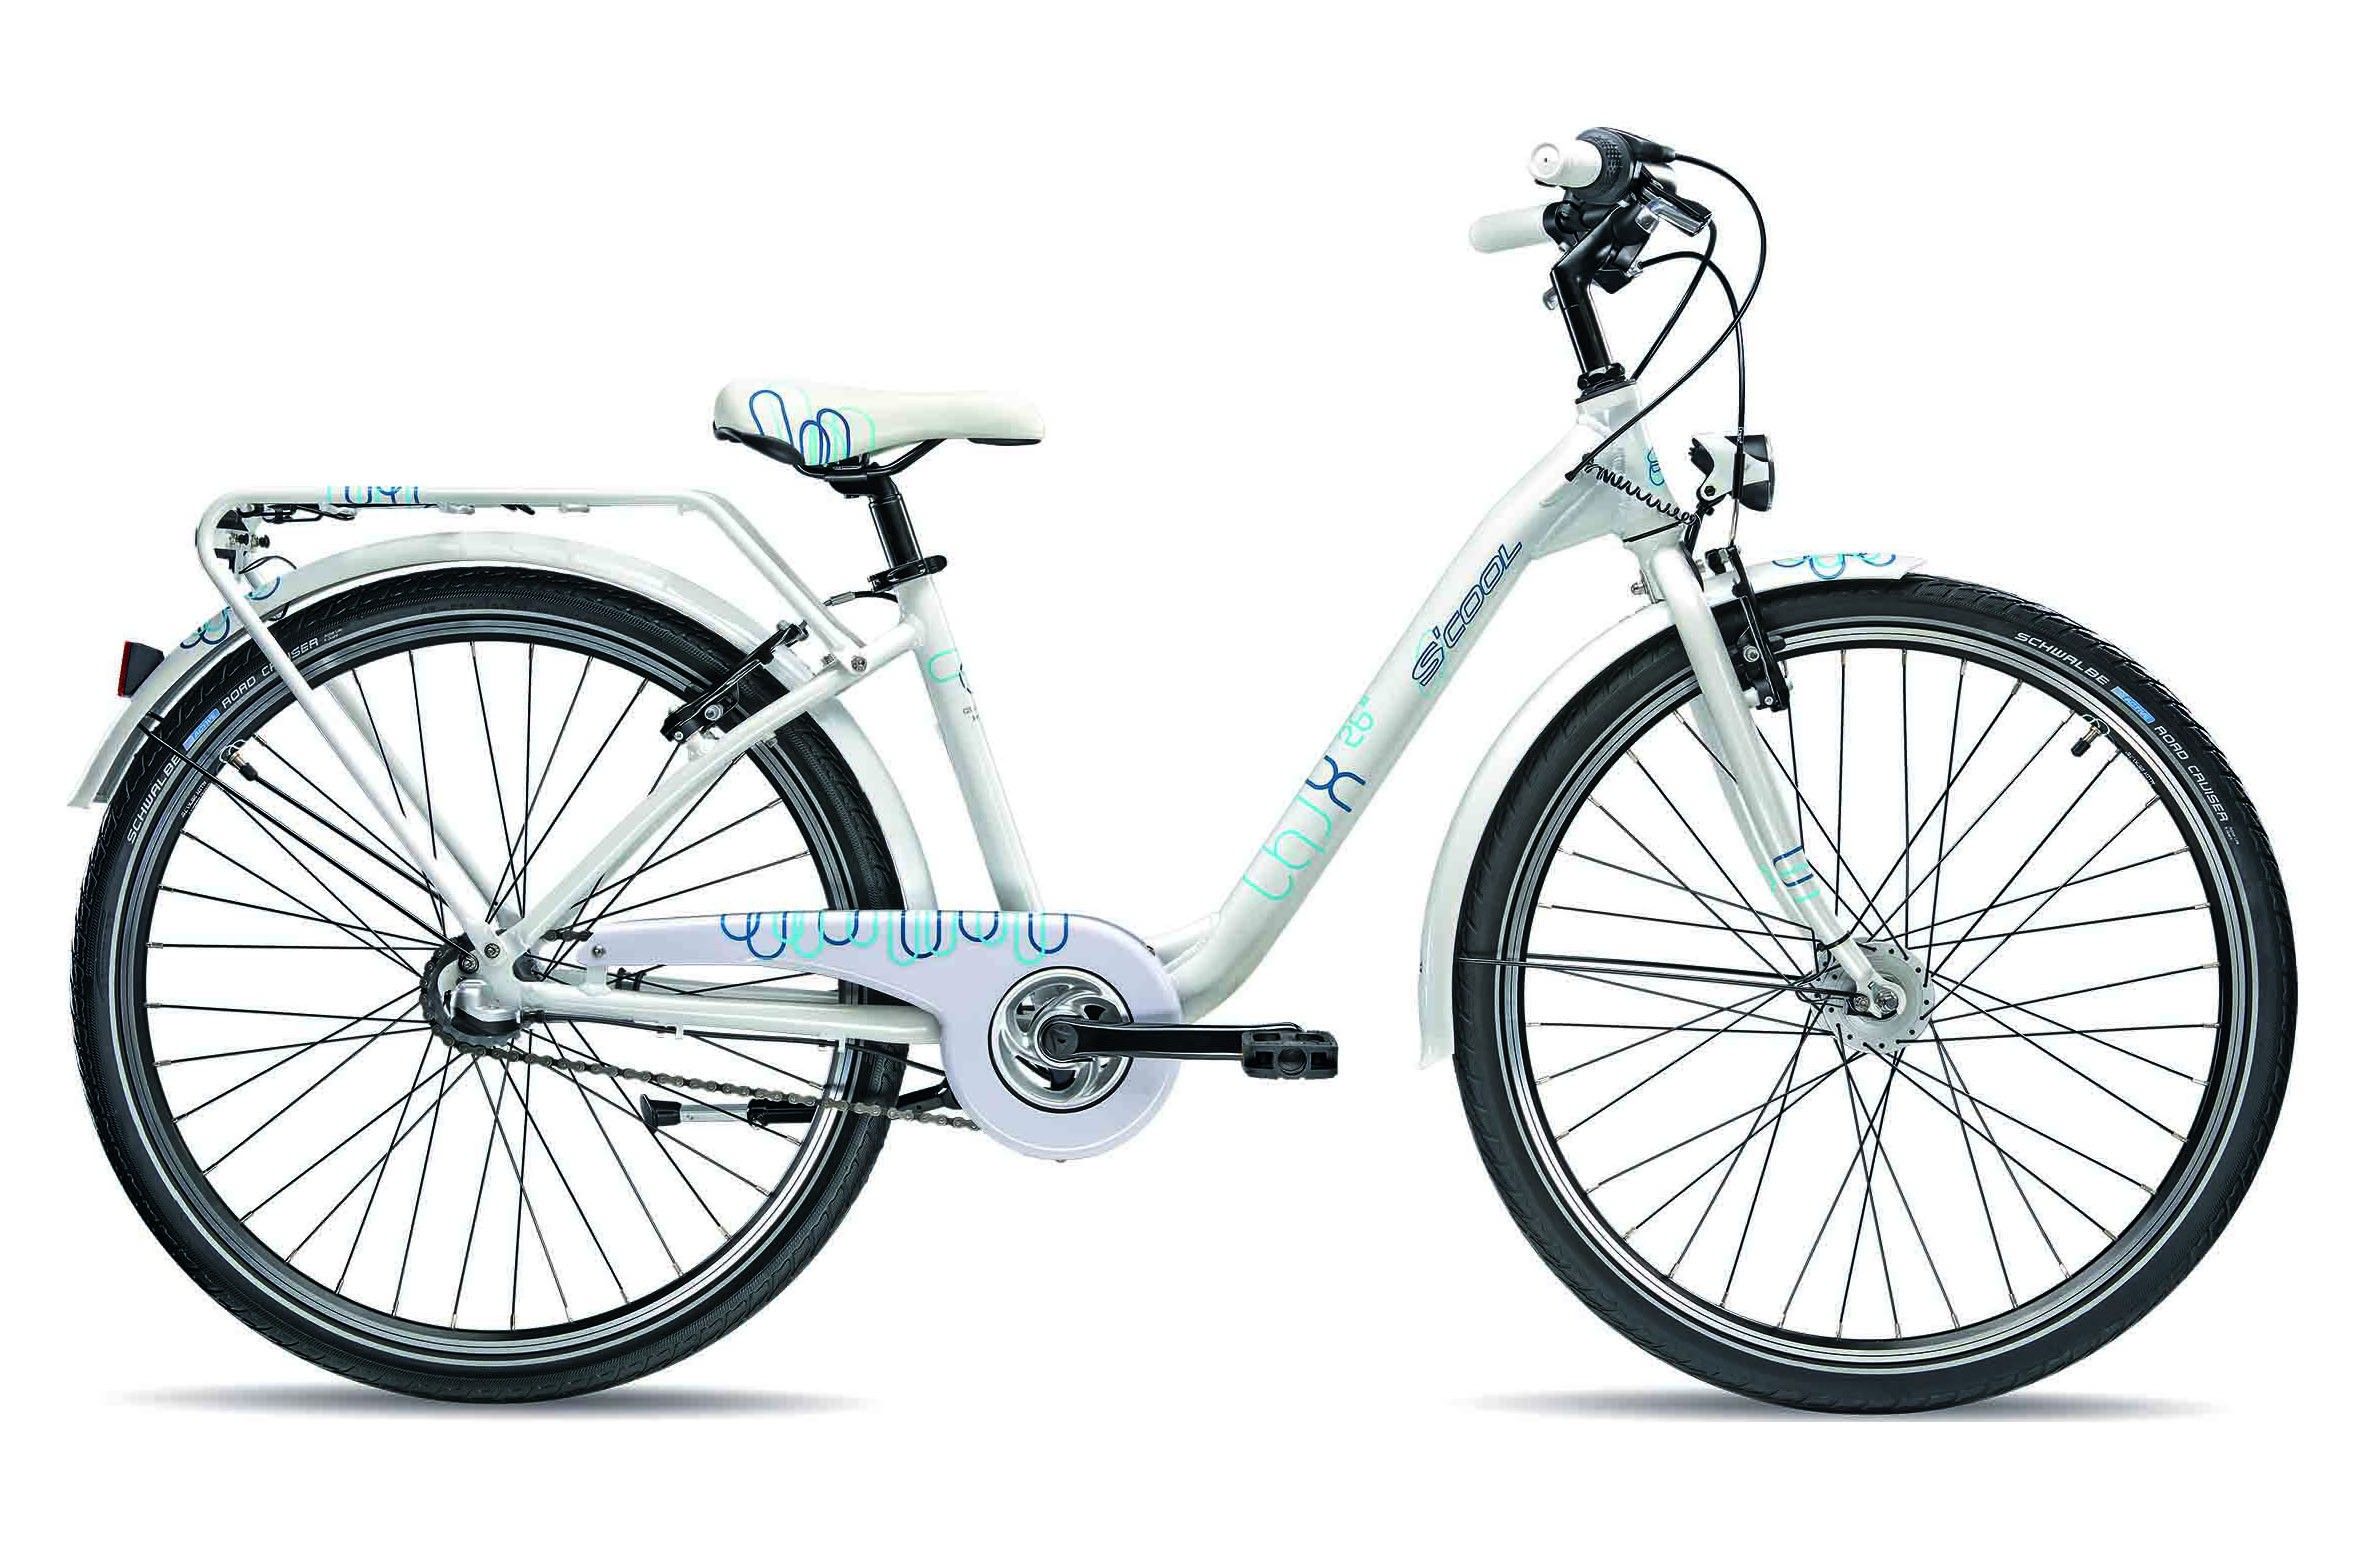  Отзывы о Женском велосипеде Scool Chix Pro 26 3S 2015